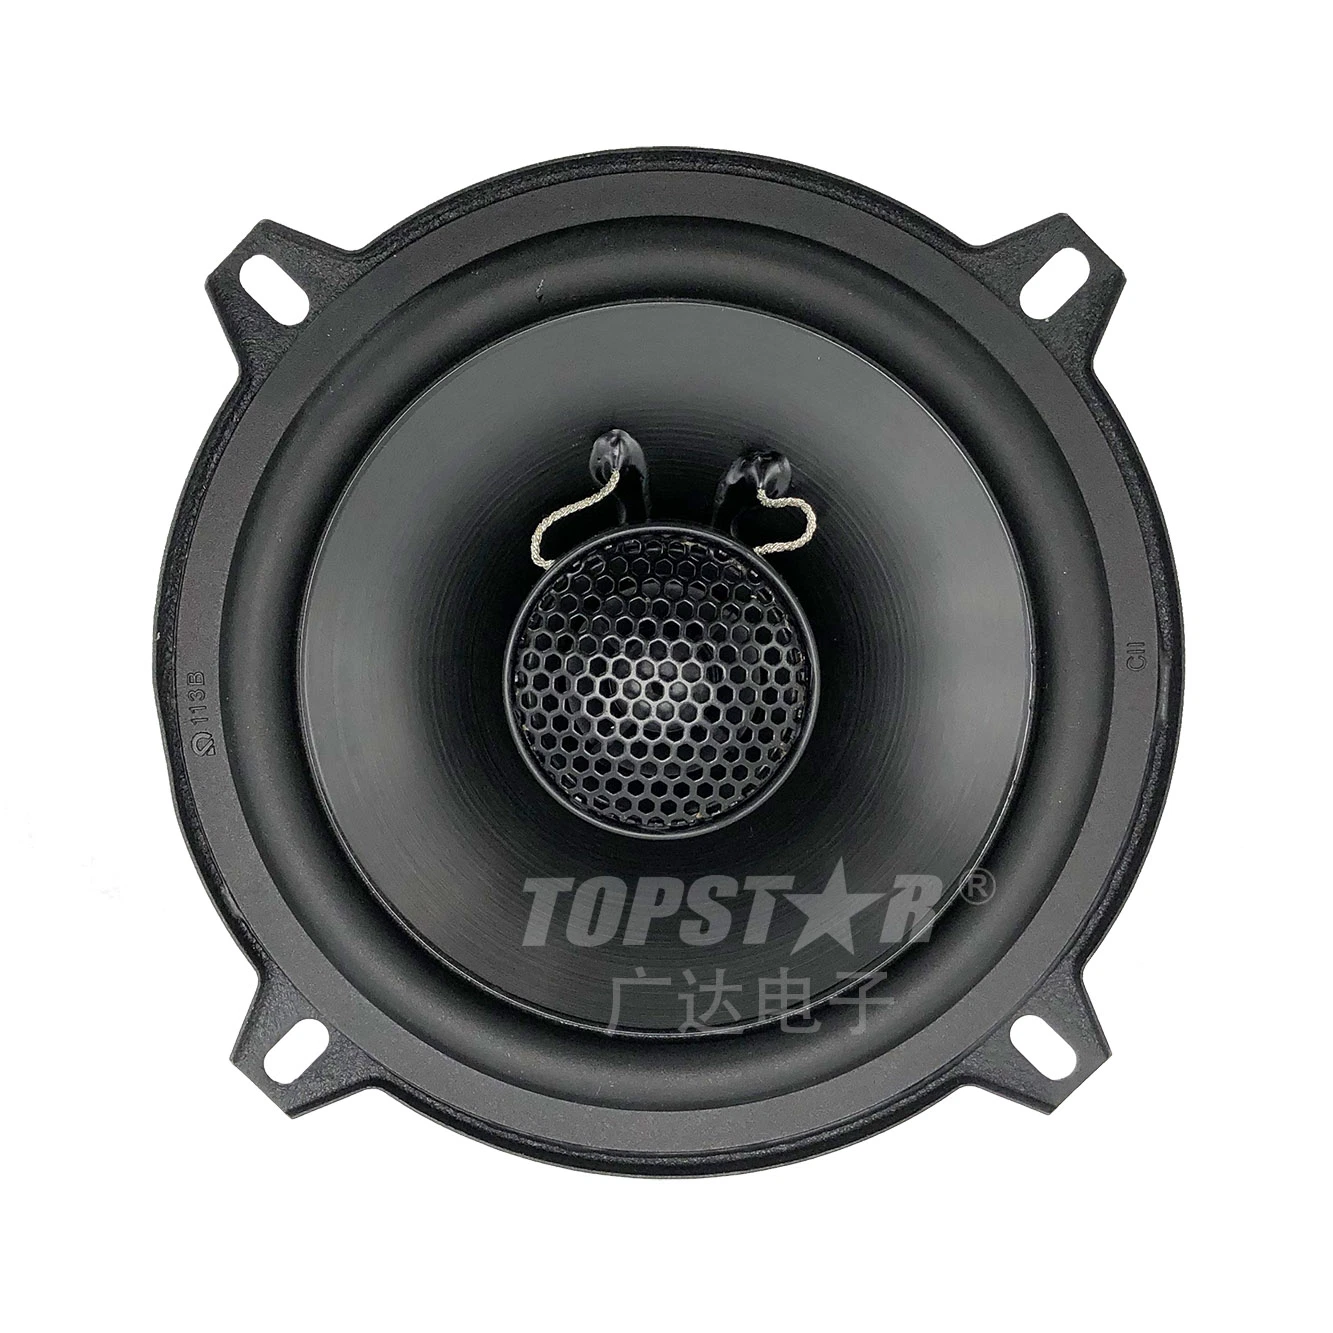 Stereo Lautsprecher Professionelle Lautsprecher Sound Box Koaxial Auto Sound Lautsprecher